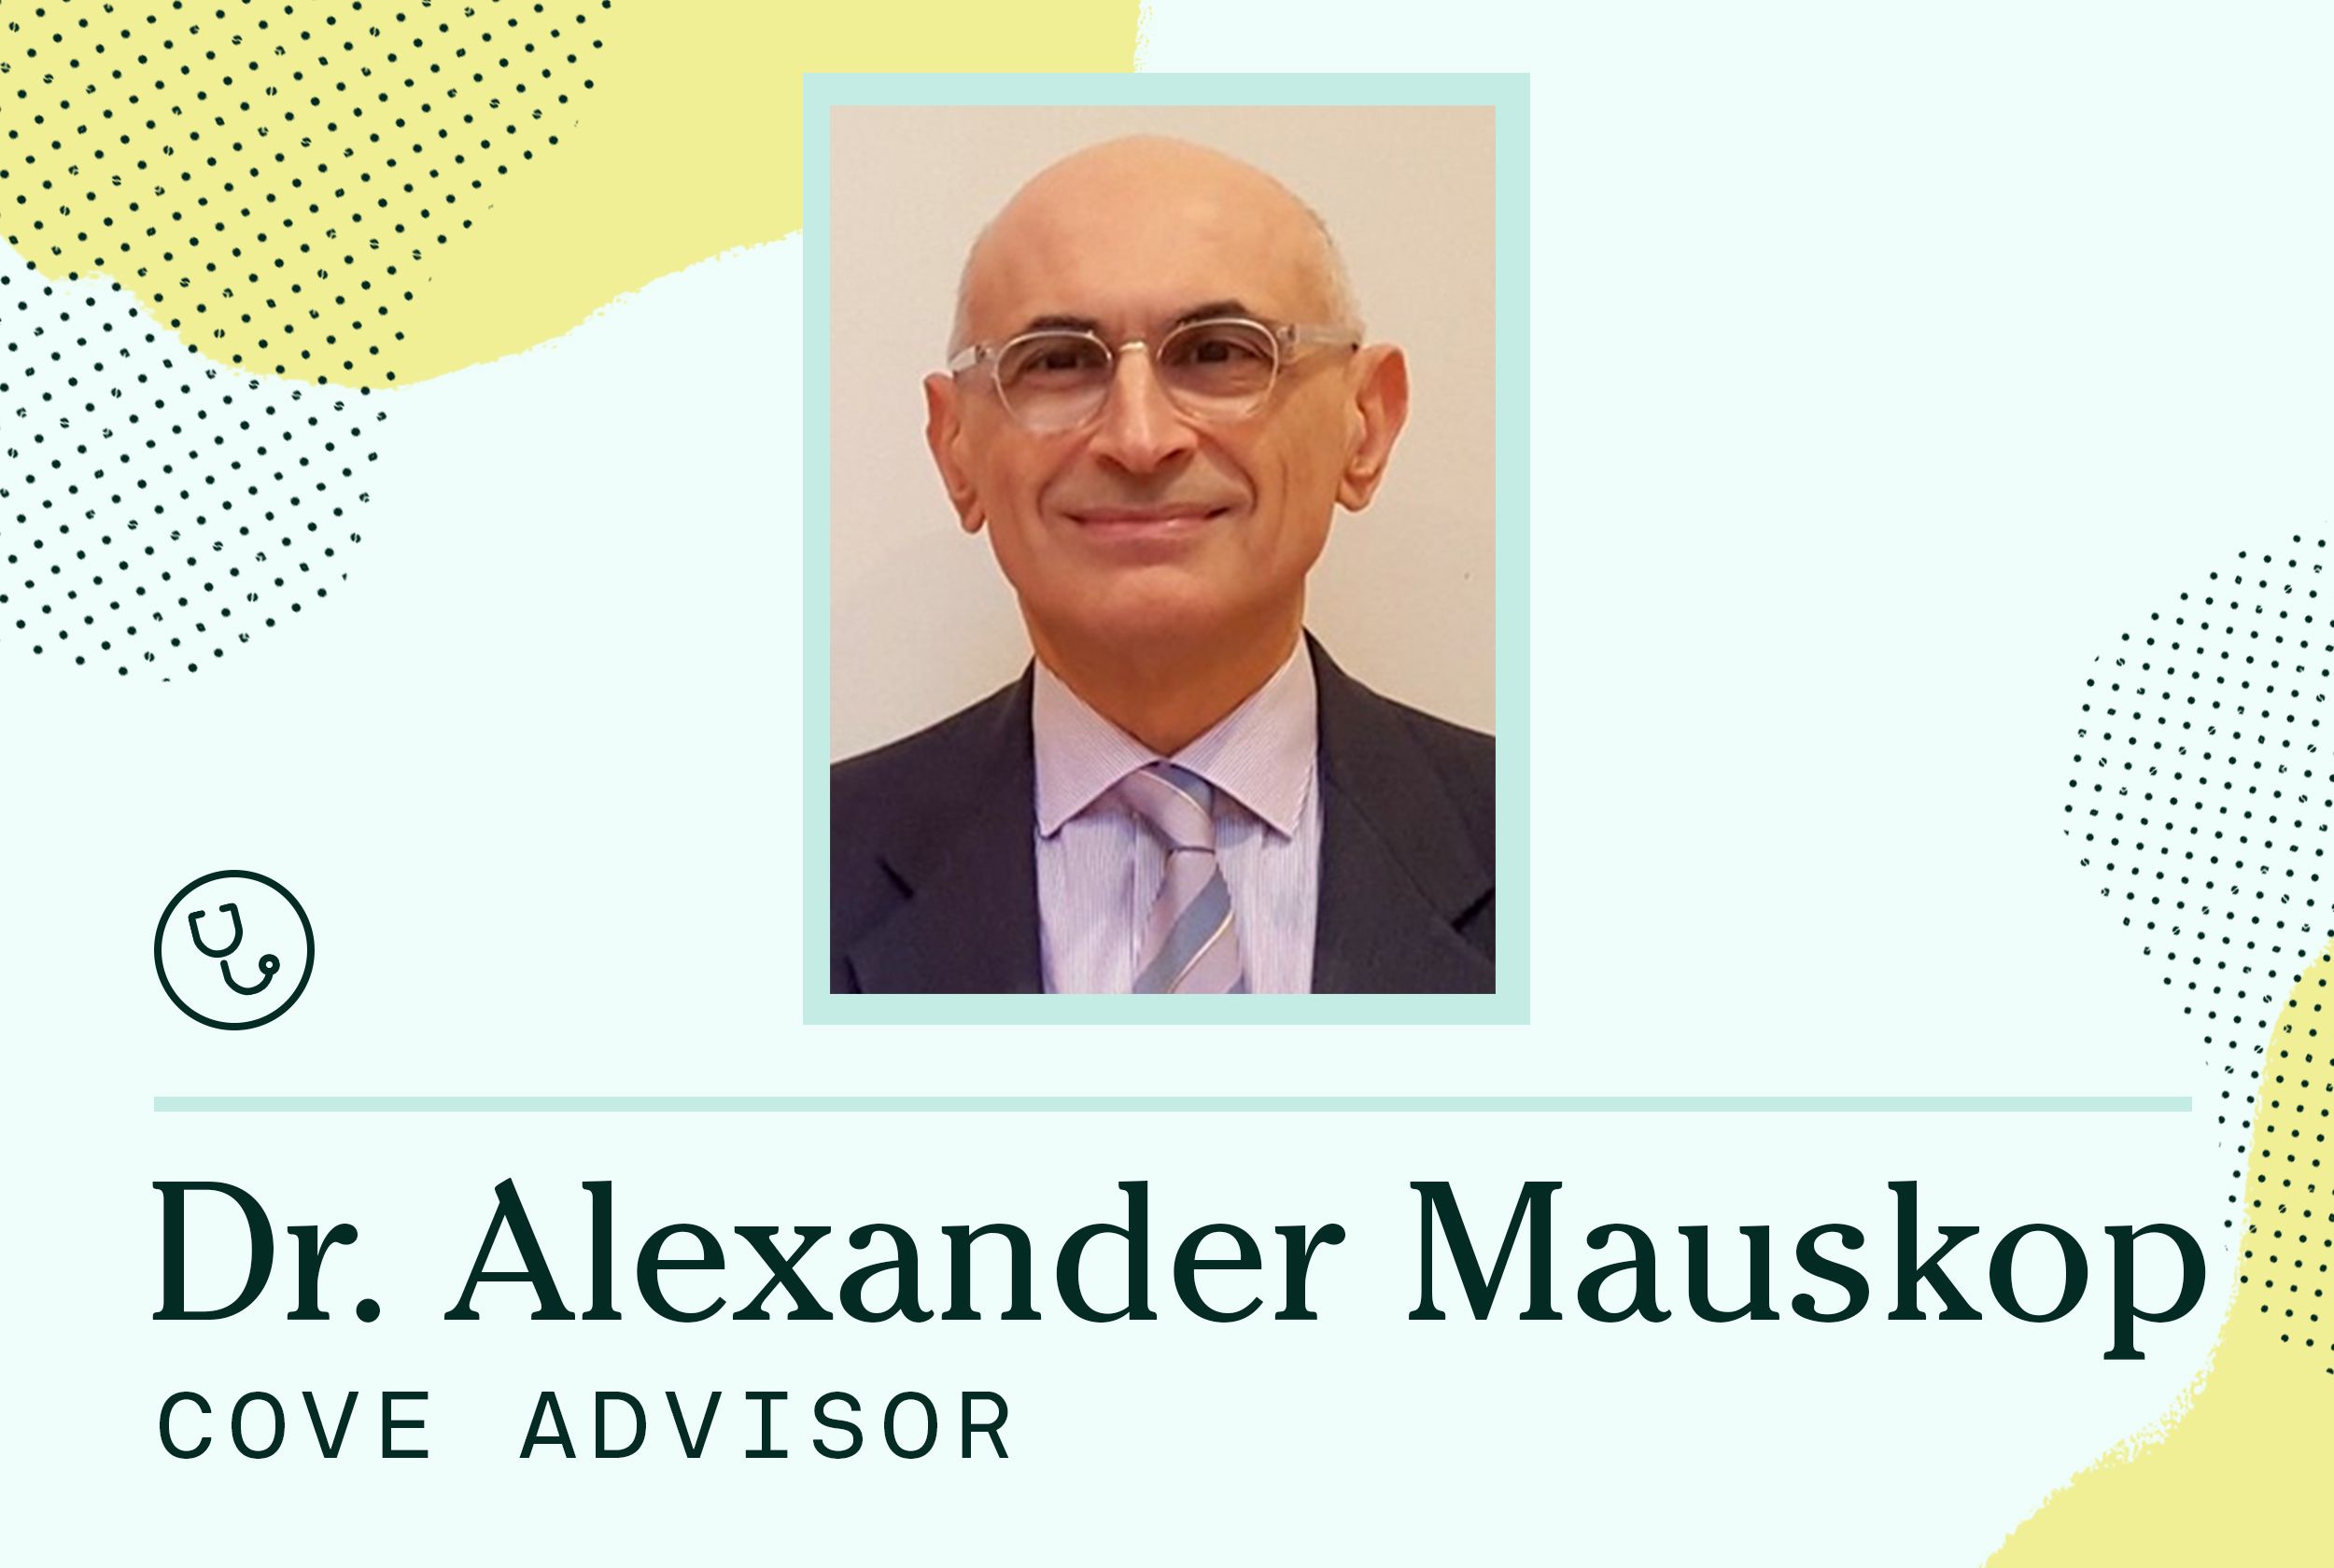 Dr. Alexander Mauskop